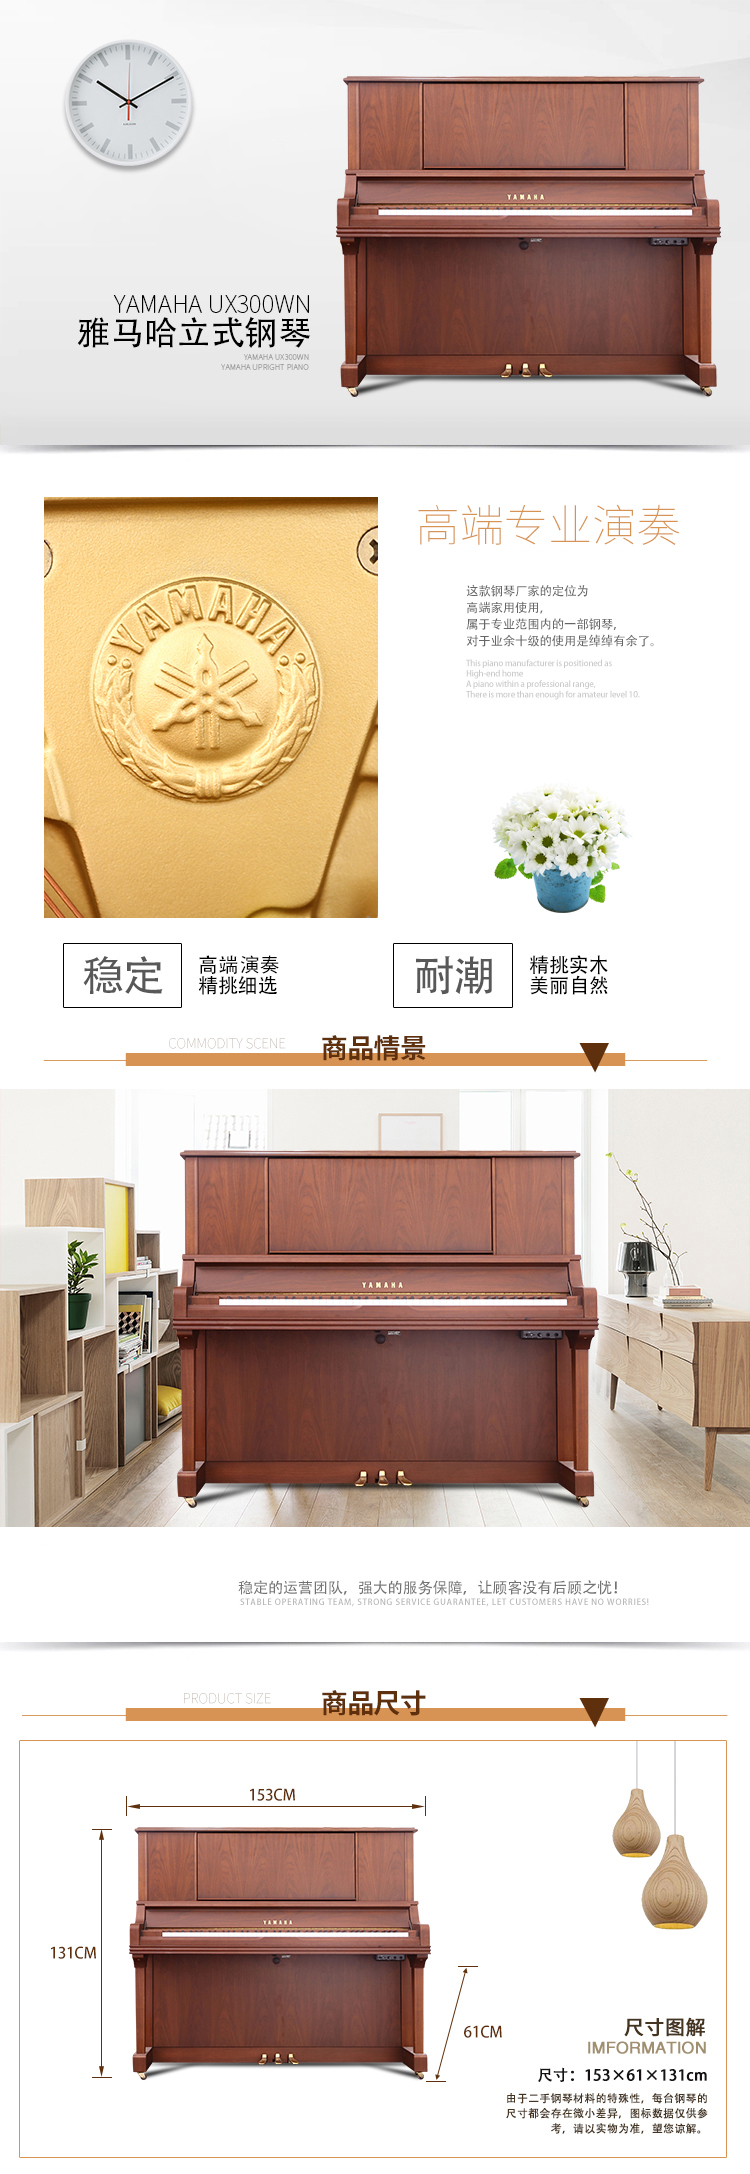 日本原装进口雅马哈钢琴 YAMAHA UX-300WN(图1)